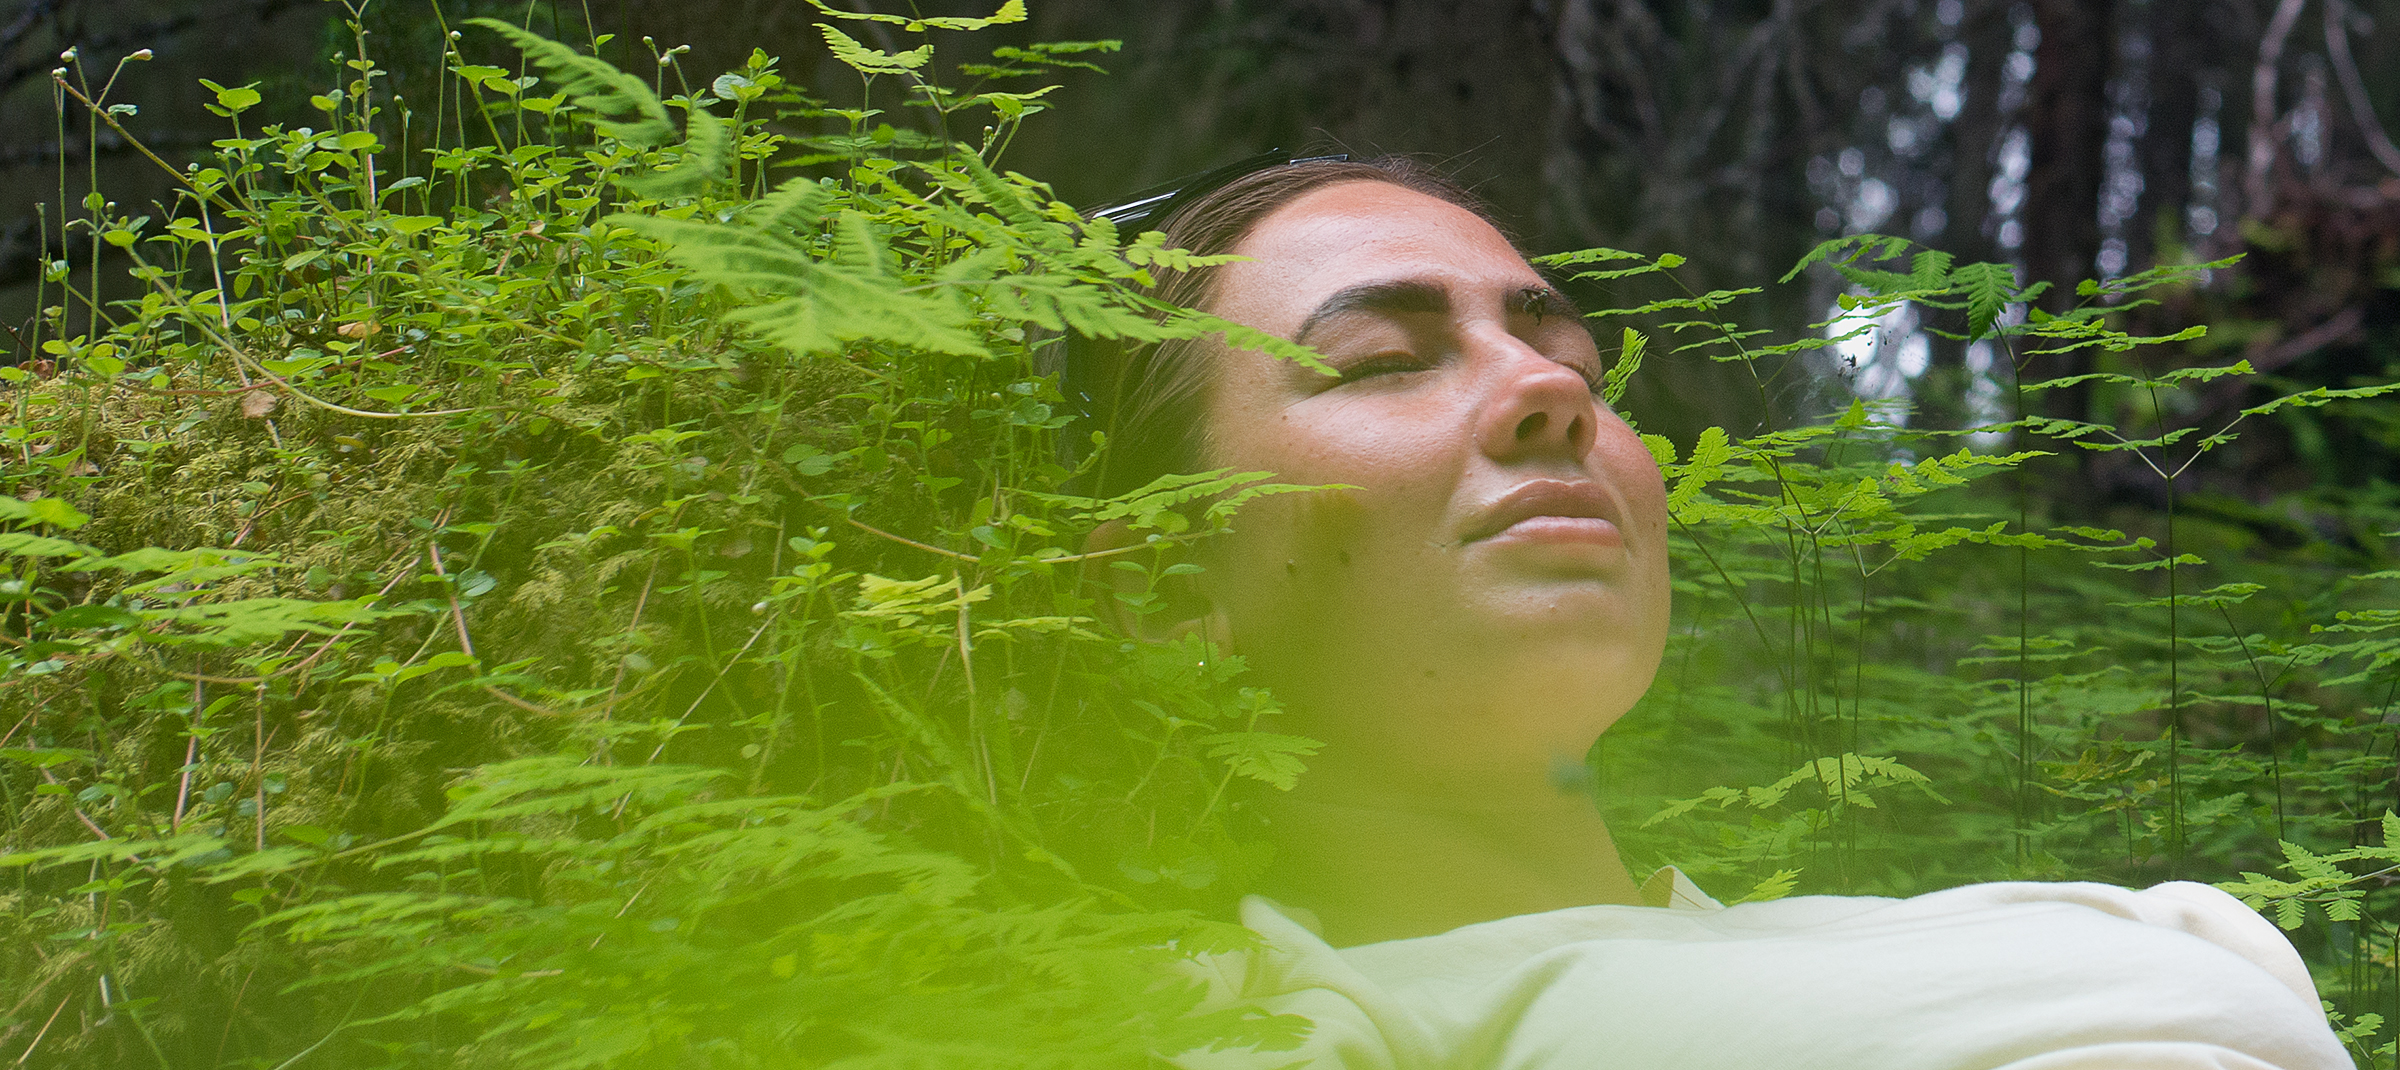 Ung kvinna vilar i grönskan i en skog, hon skogsbadar.